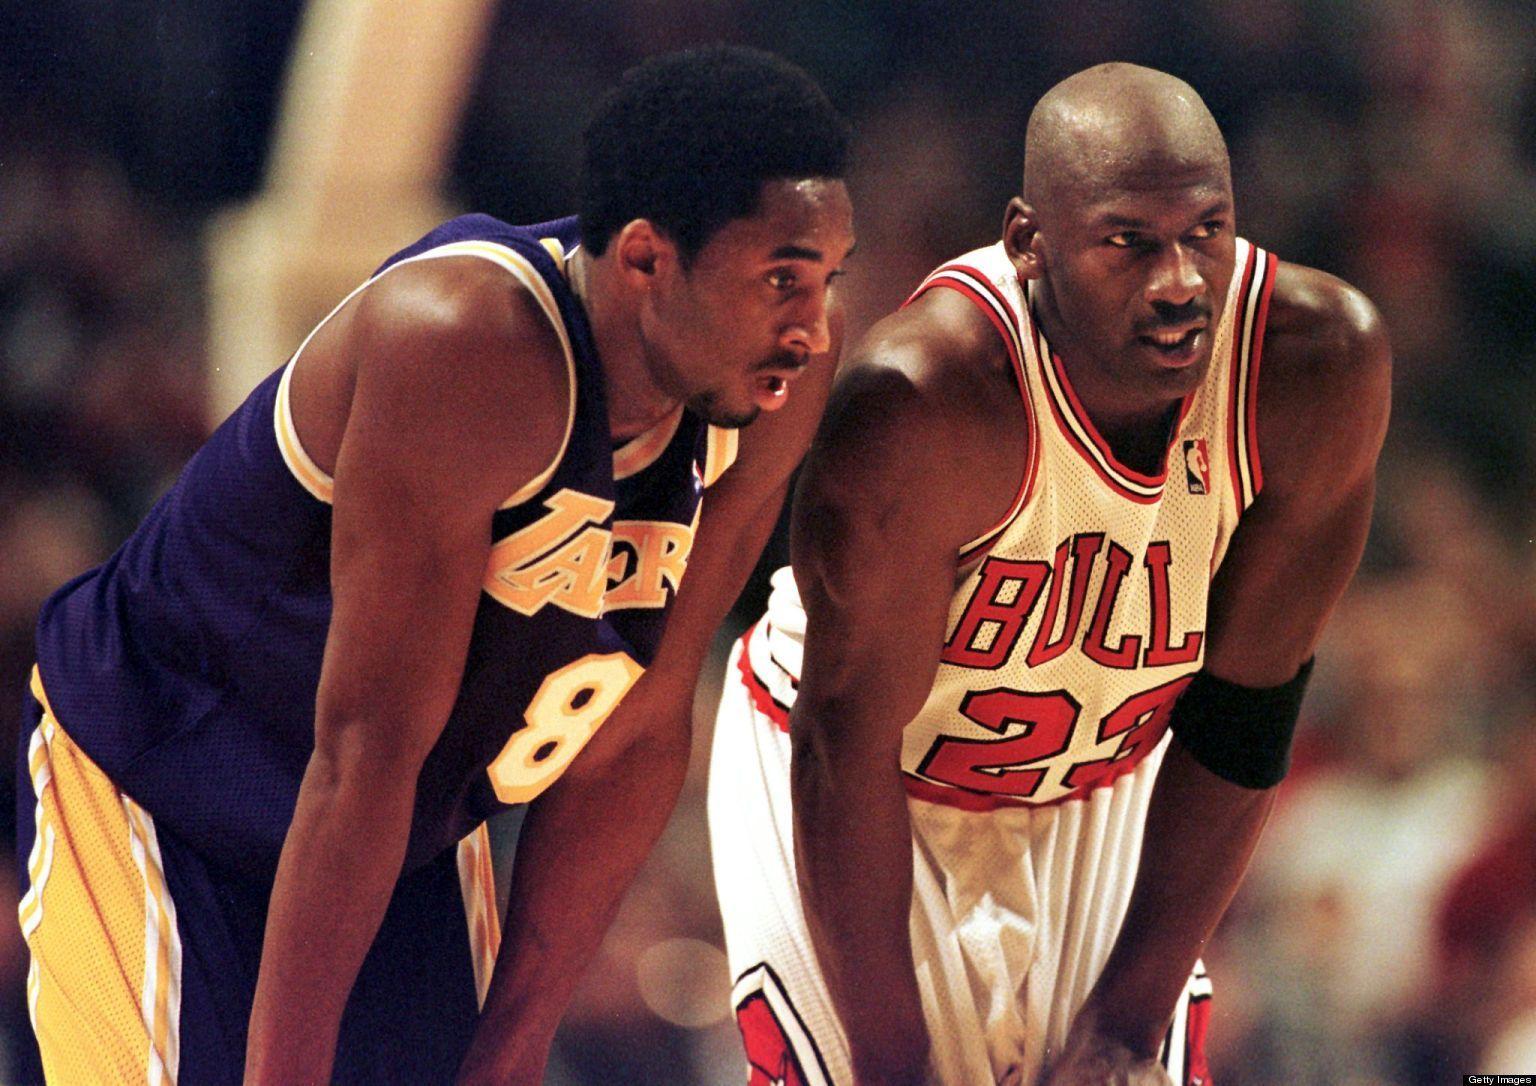 Espectacular: La inspiración que supuso Michael Jordan para Kobe